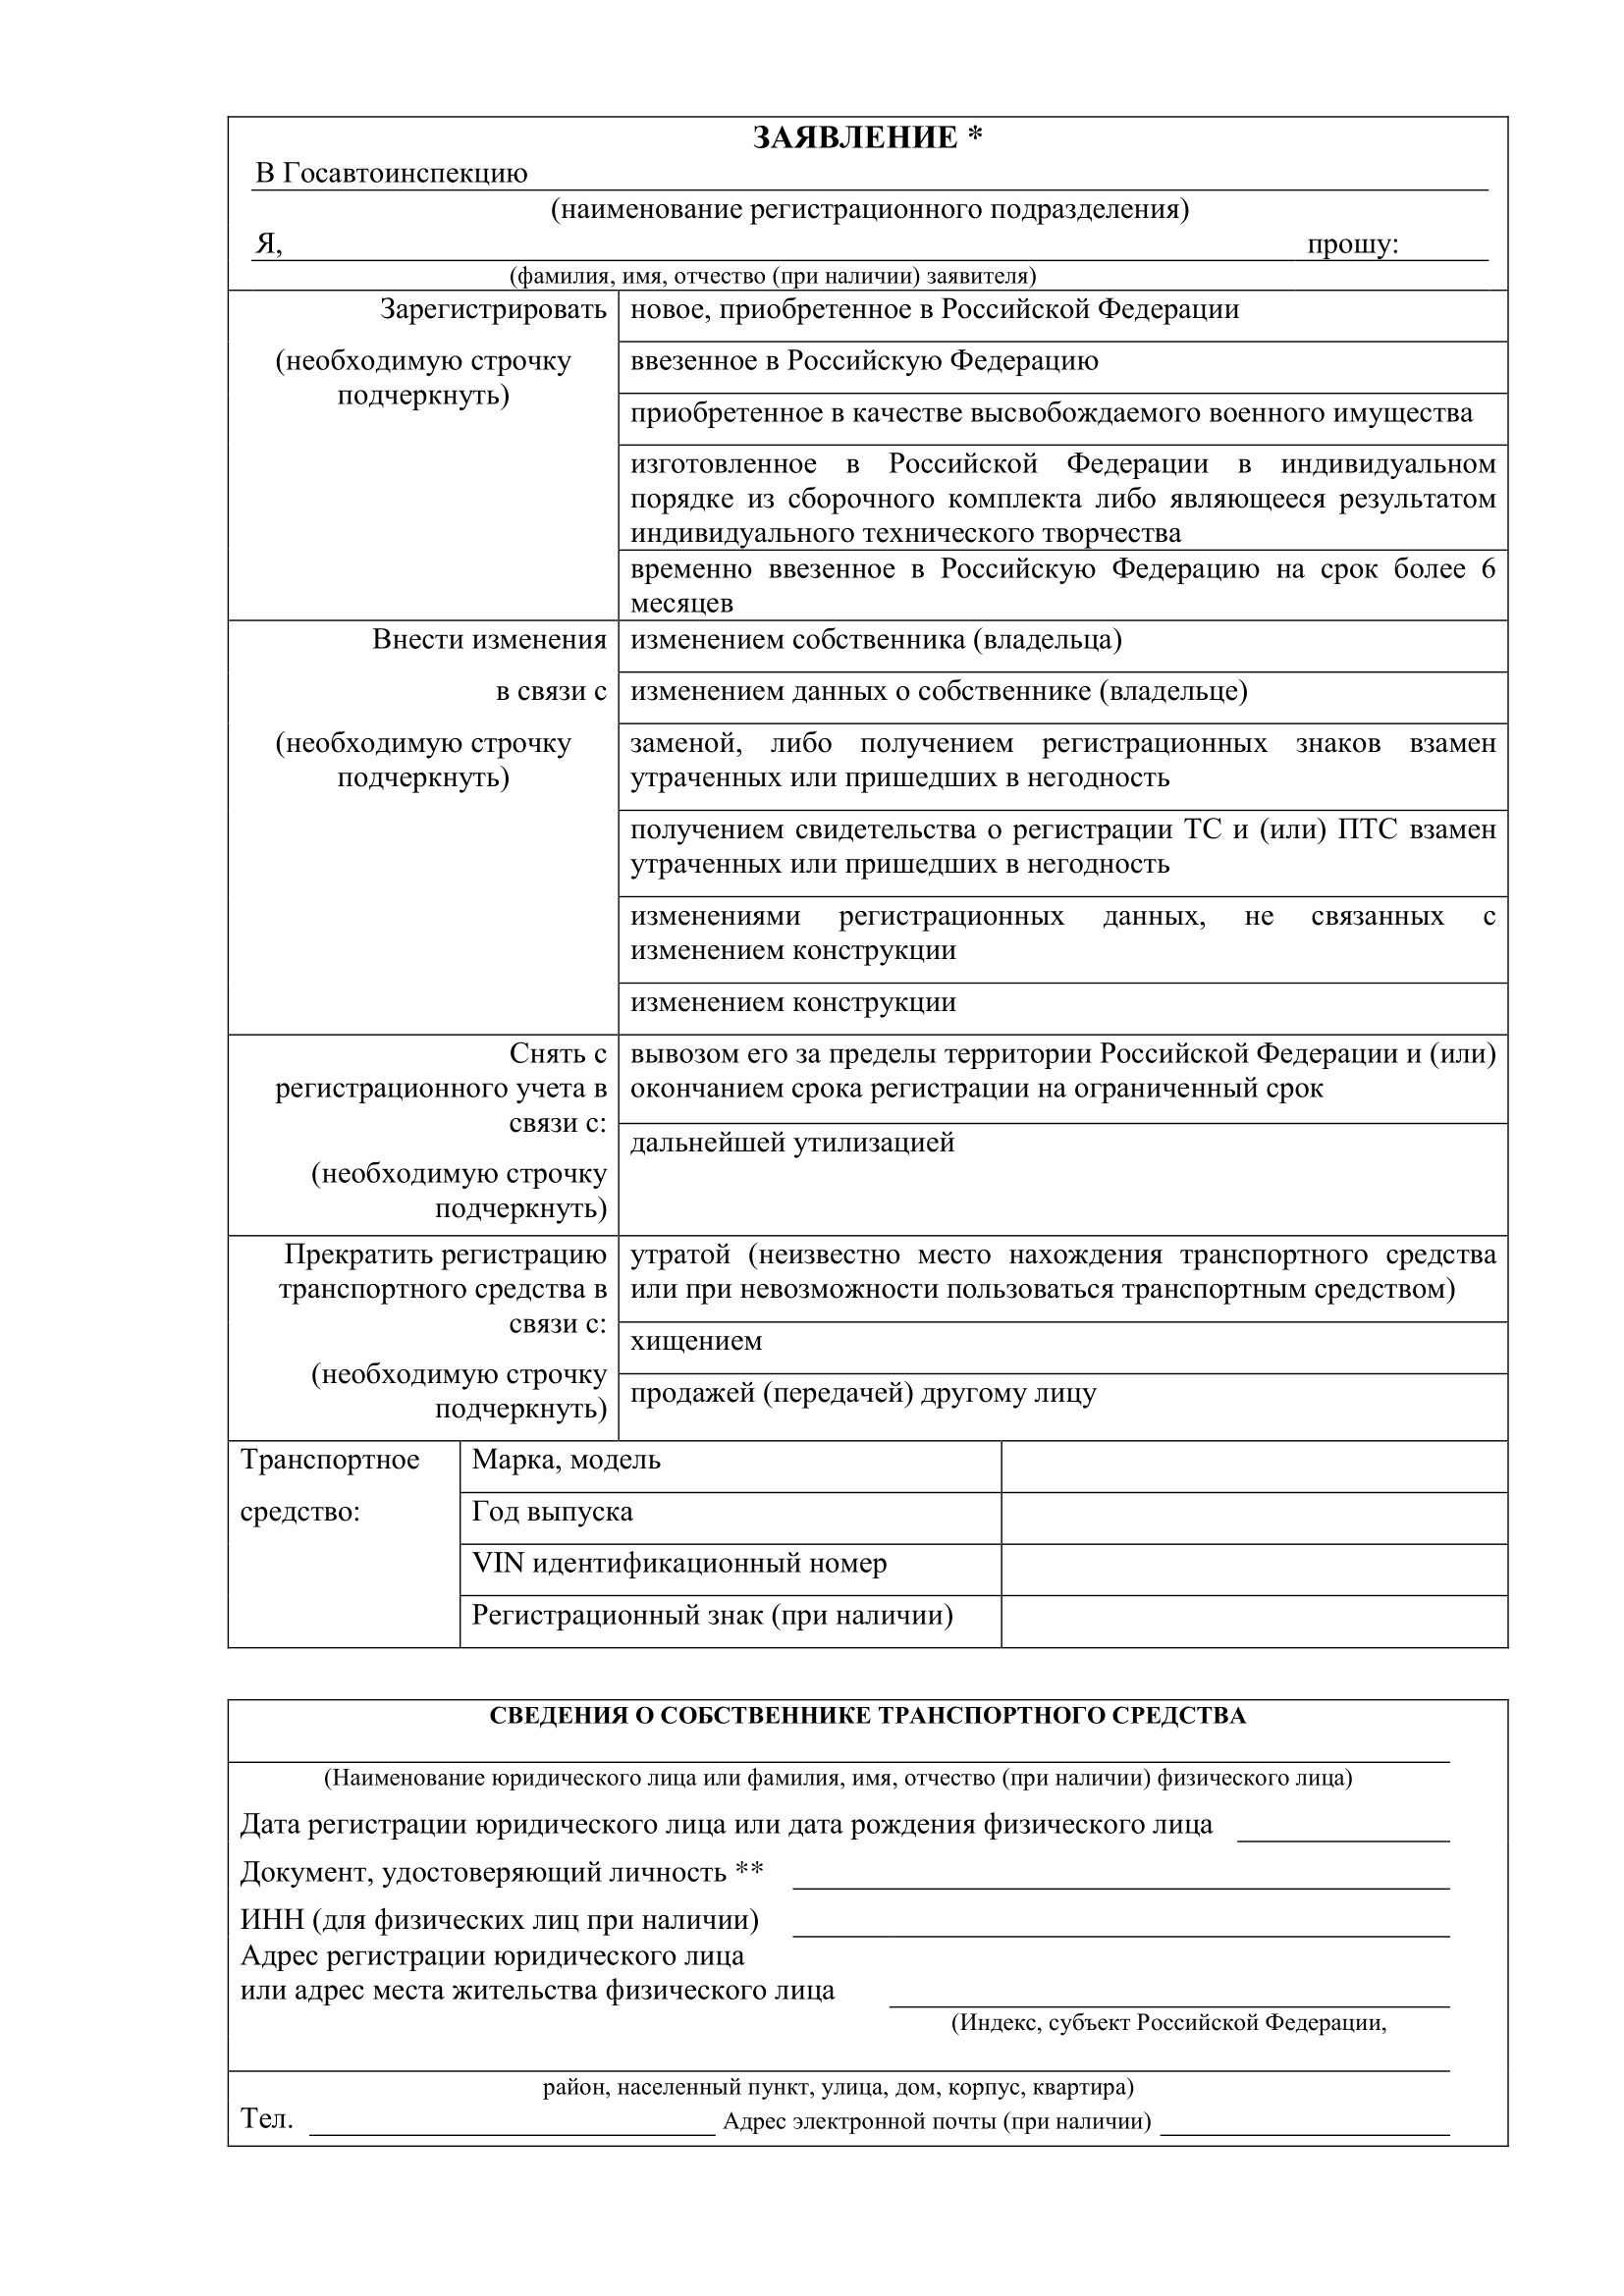 первая страница заявления о регистрации ТС в ГИБДД